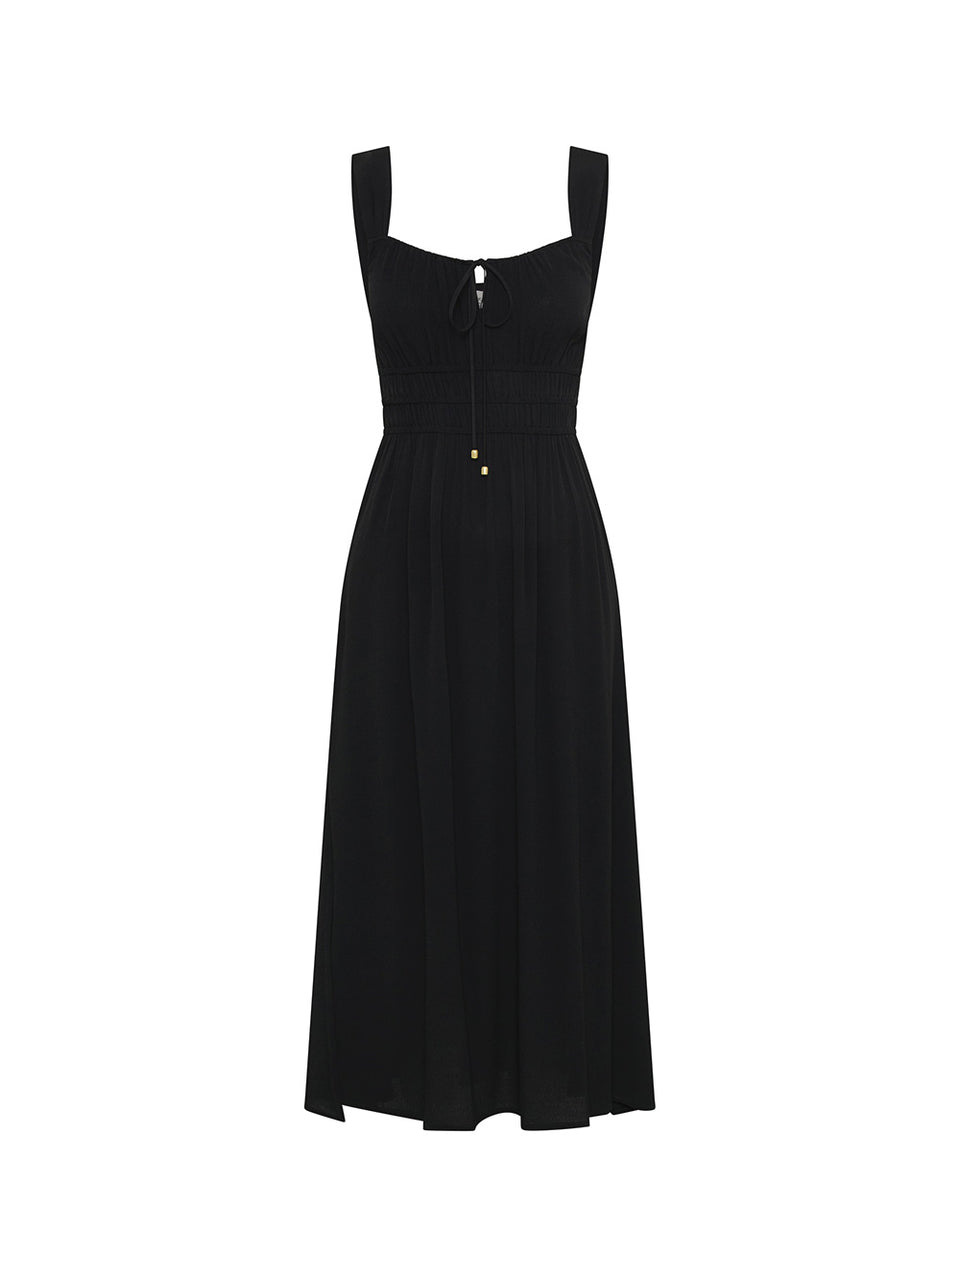 Maria Strappy Midi Dress KIVARI | Black midi dress